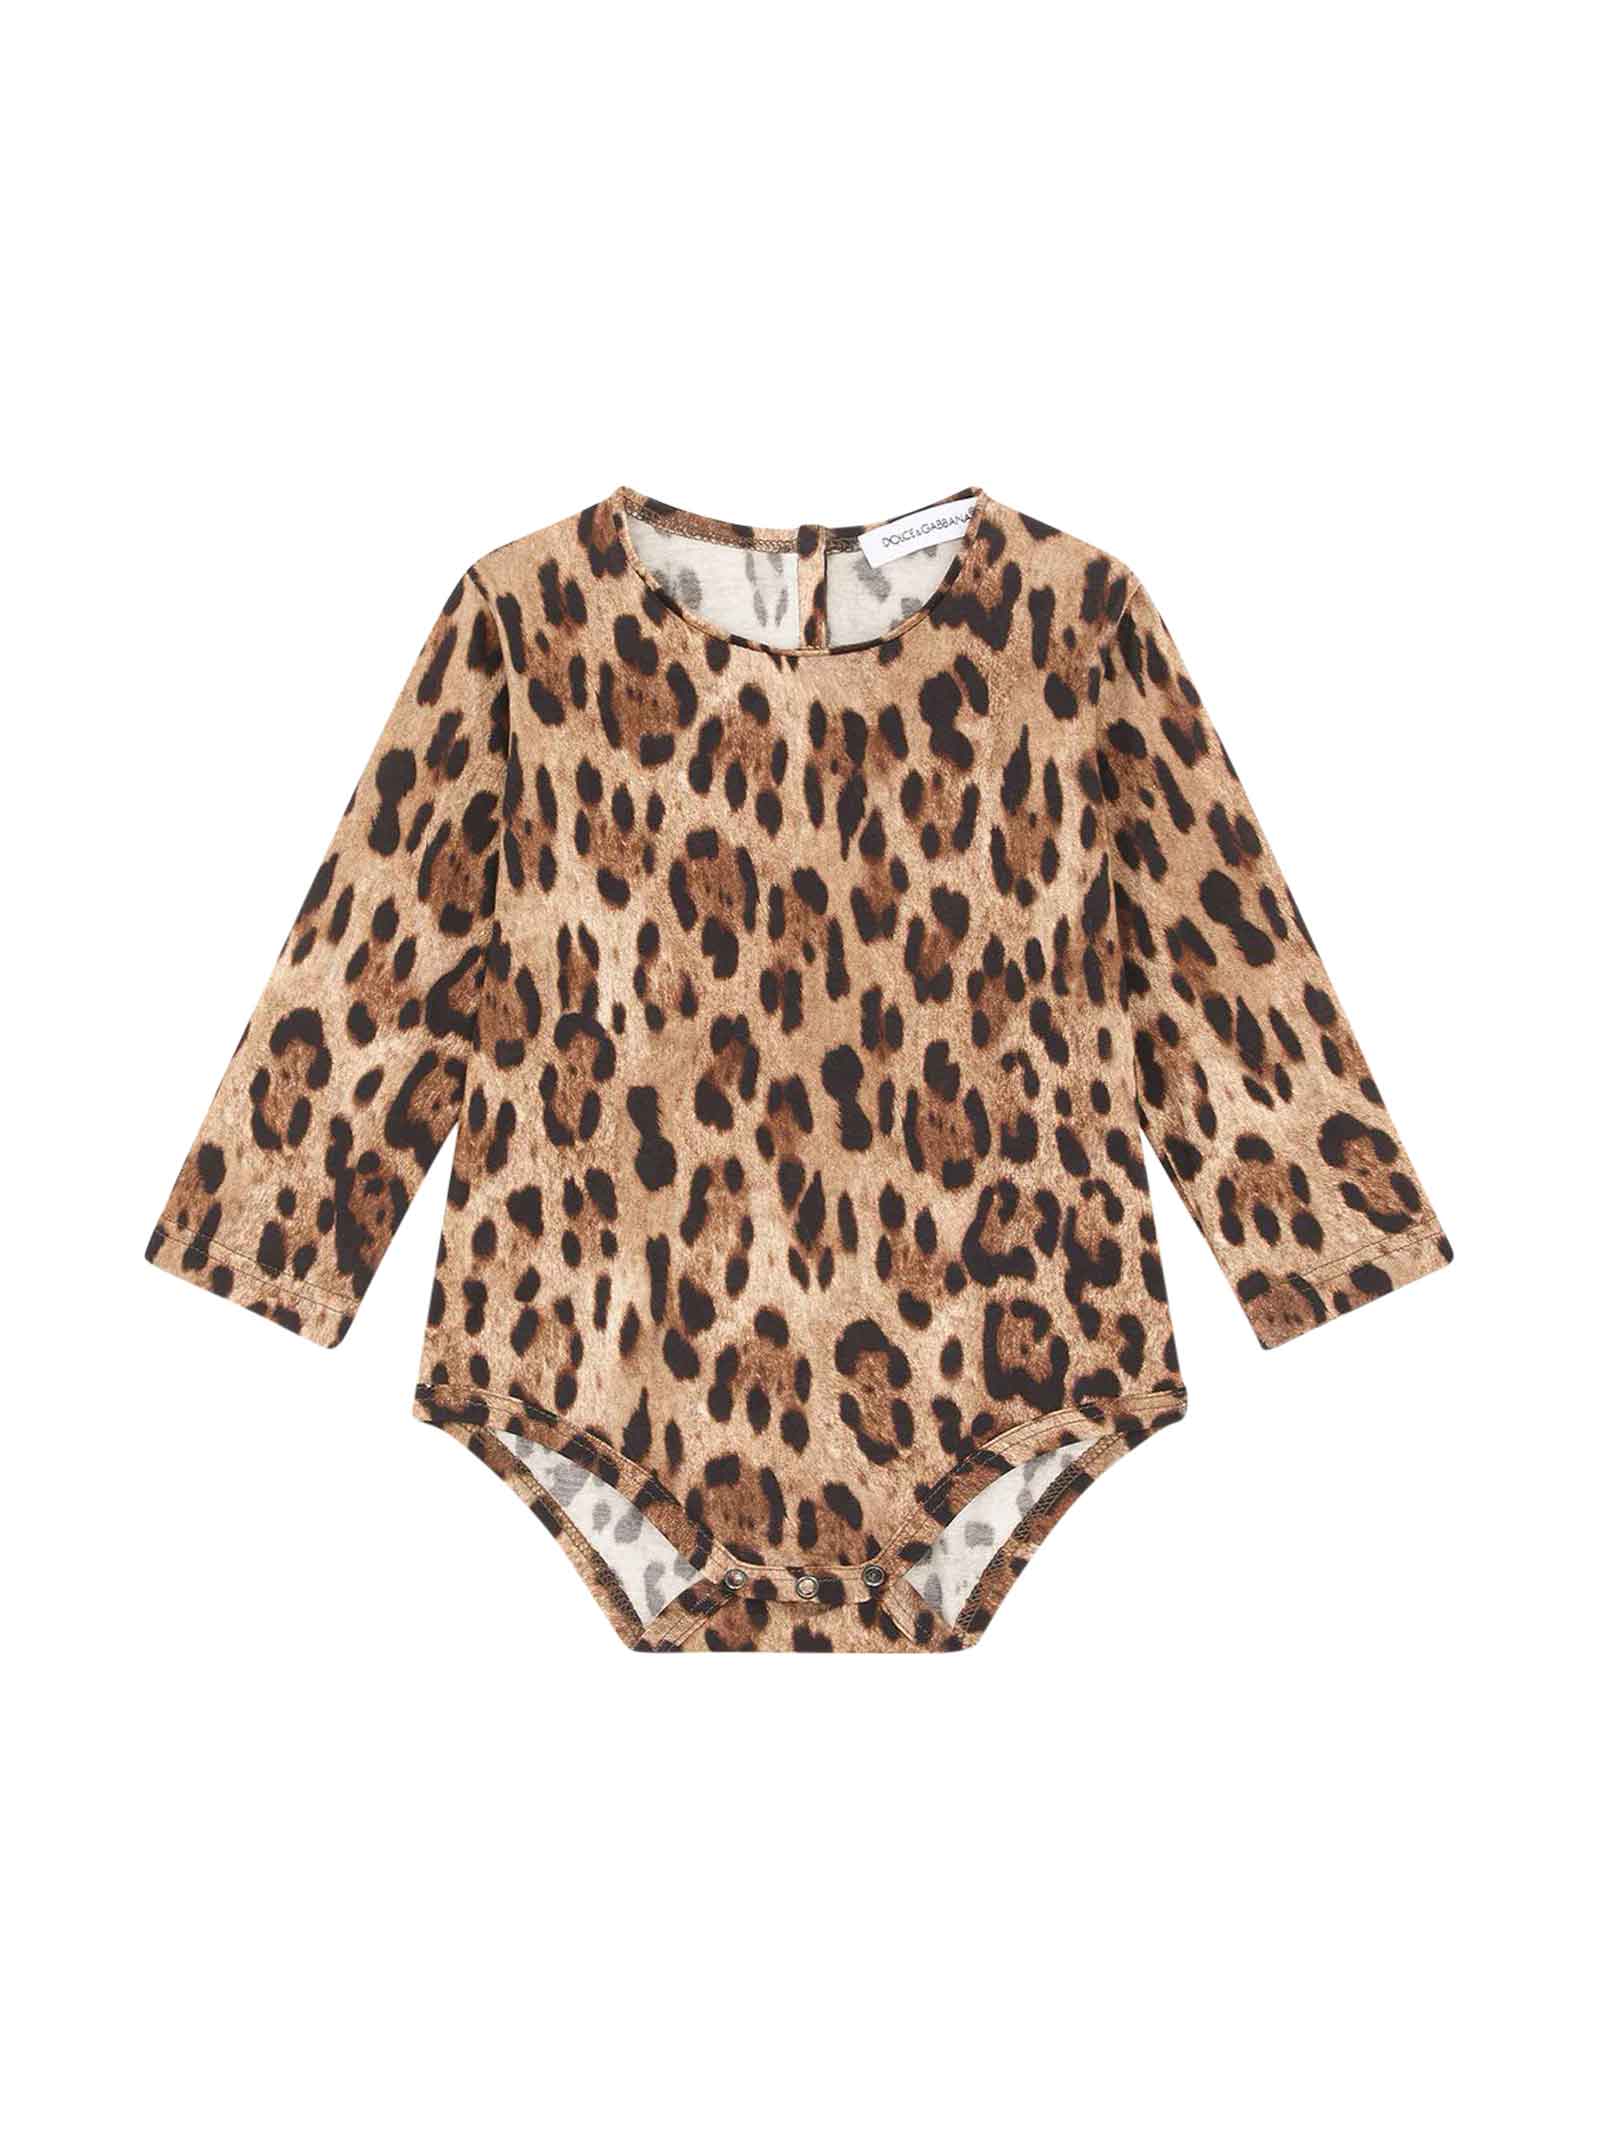 Dolce & Gabbana Baby Girl Leopard Bodysuit In Animal Print